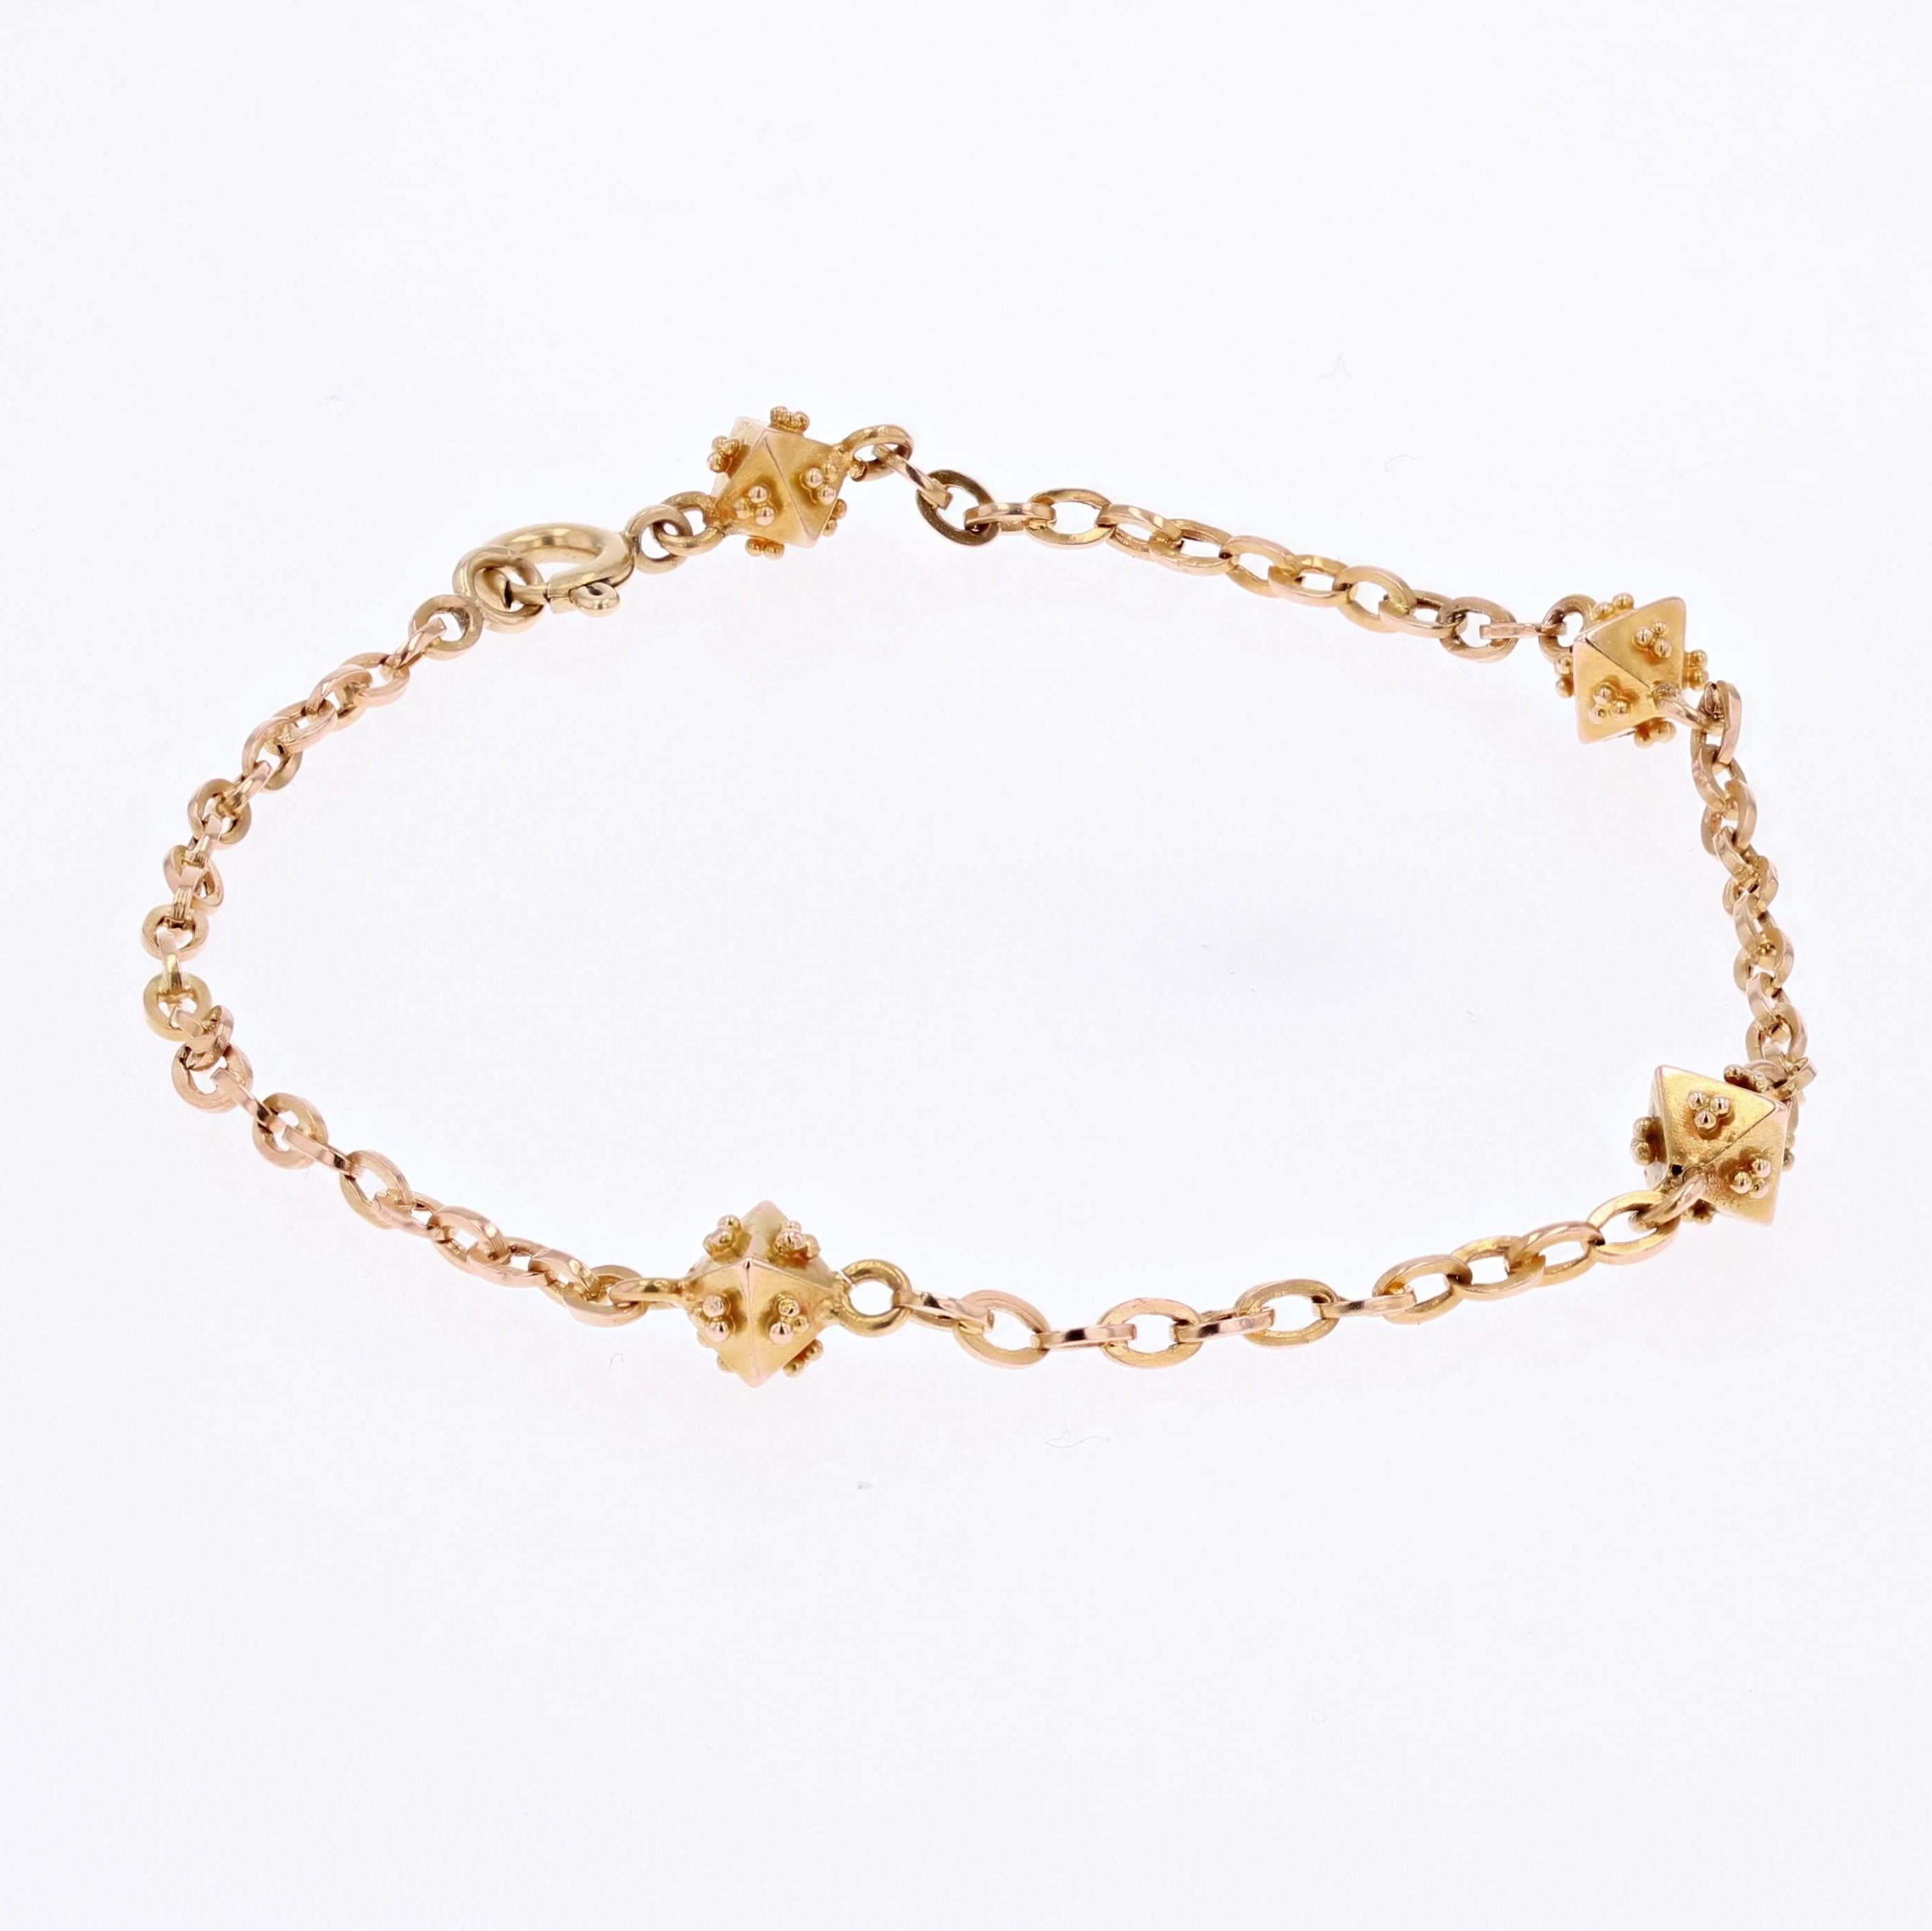 chain link bracelet pattern